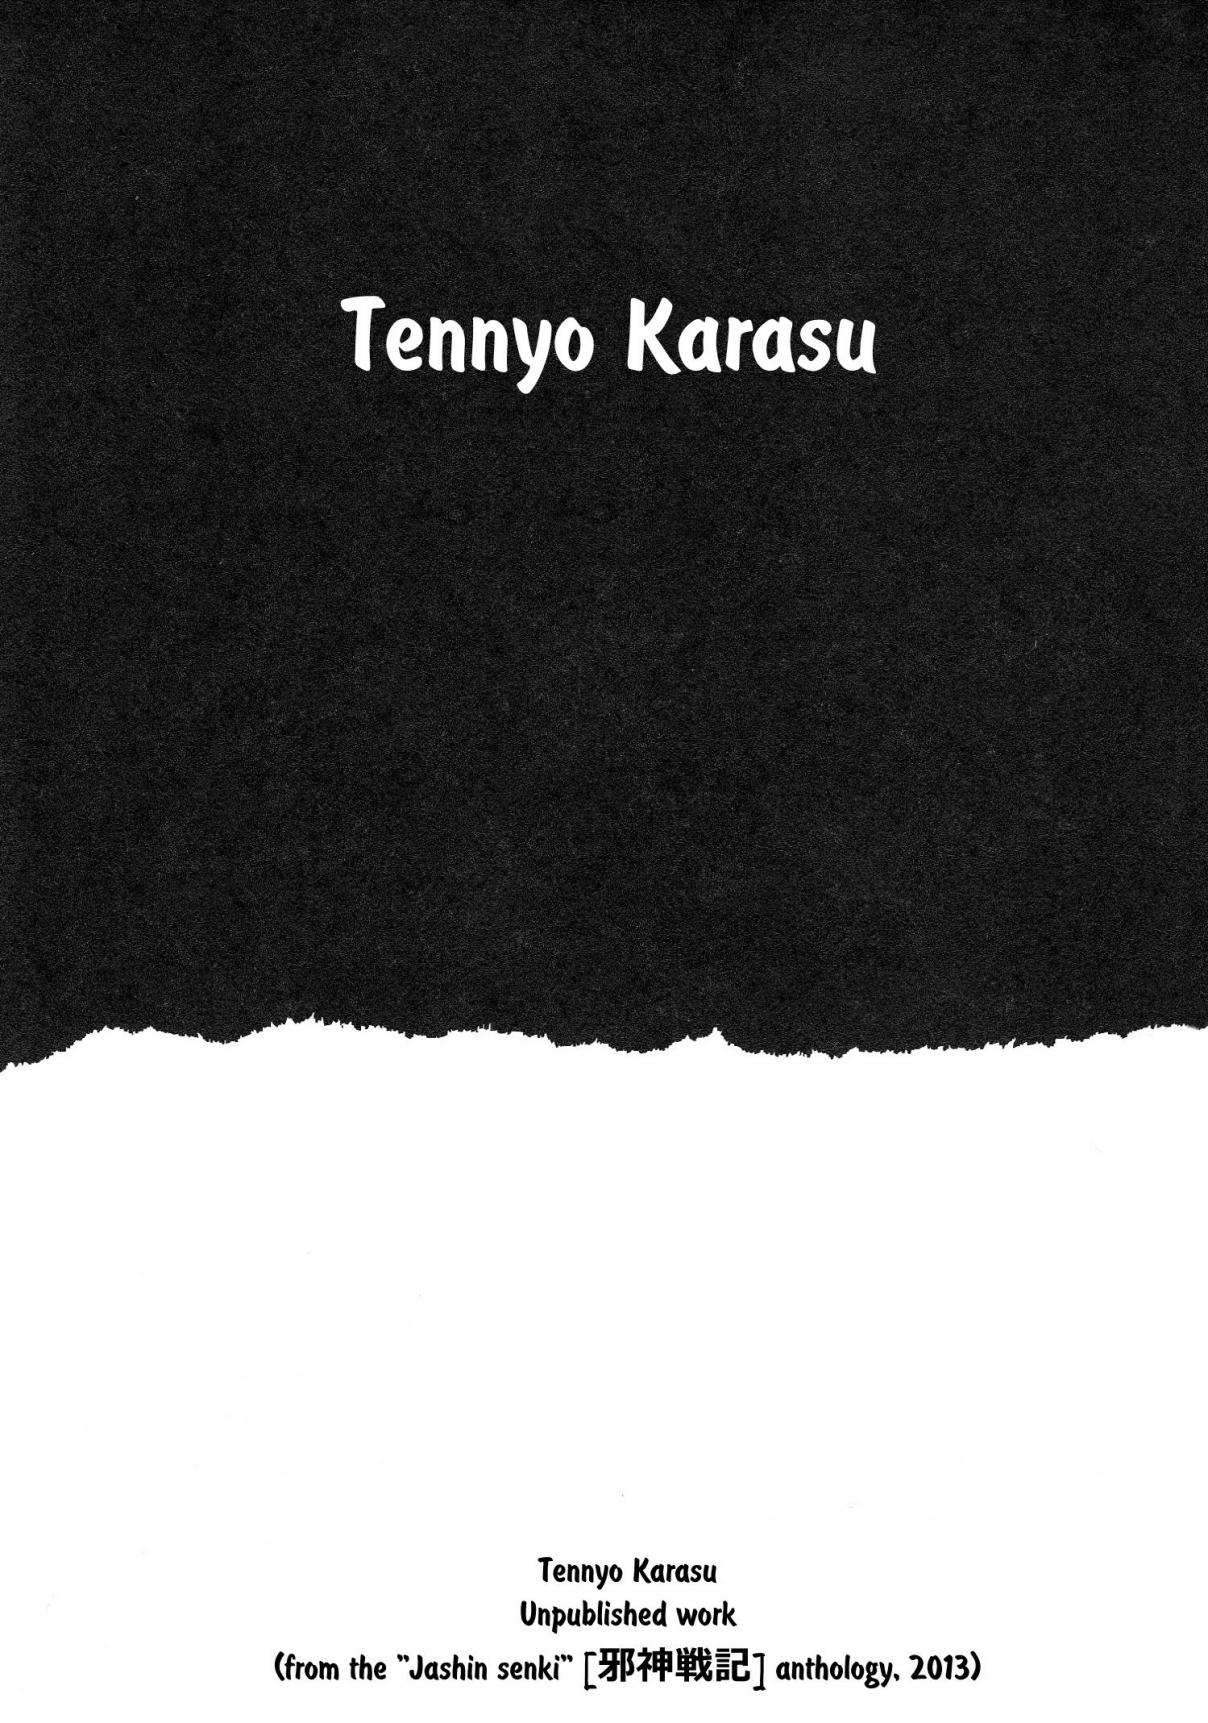 Demon War Chronicles Ch. 6 Tennyo Karasu